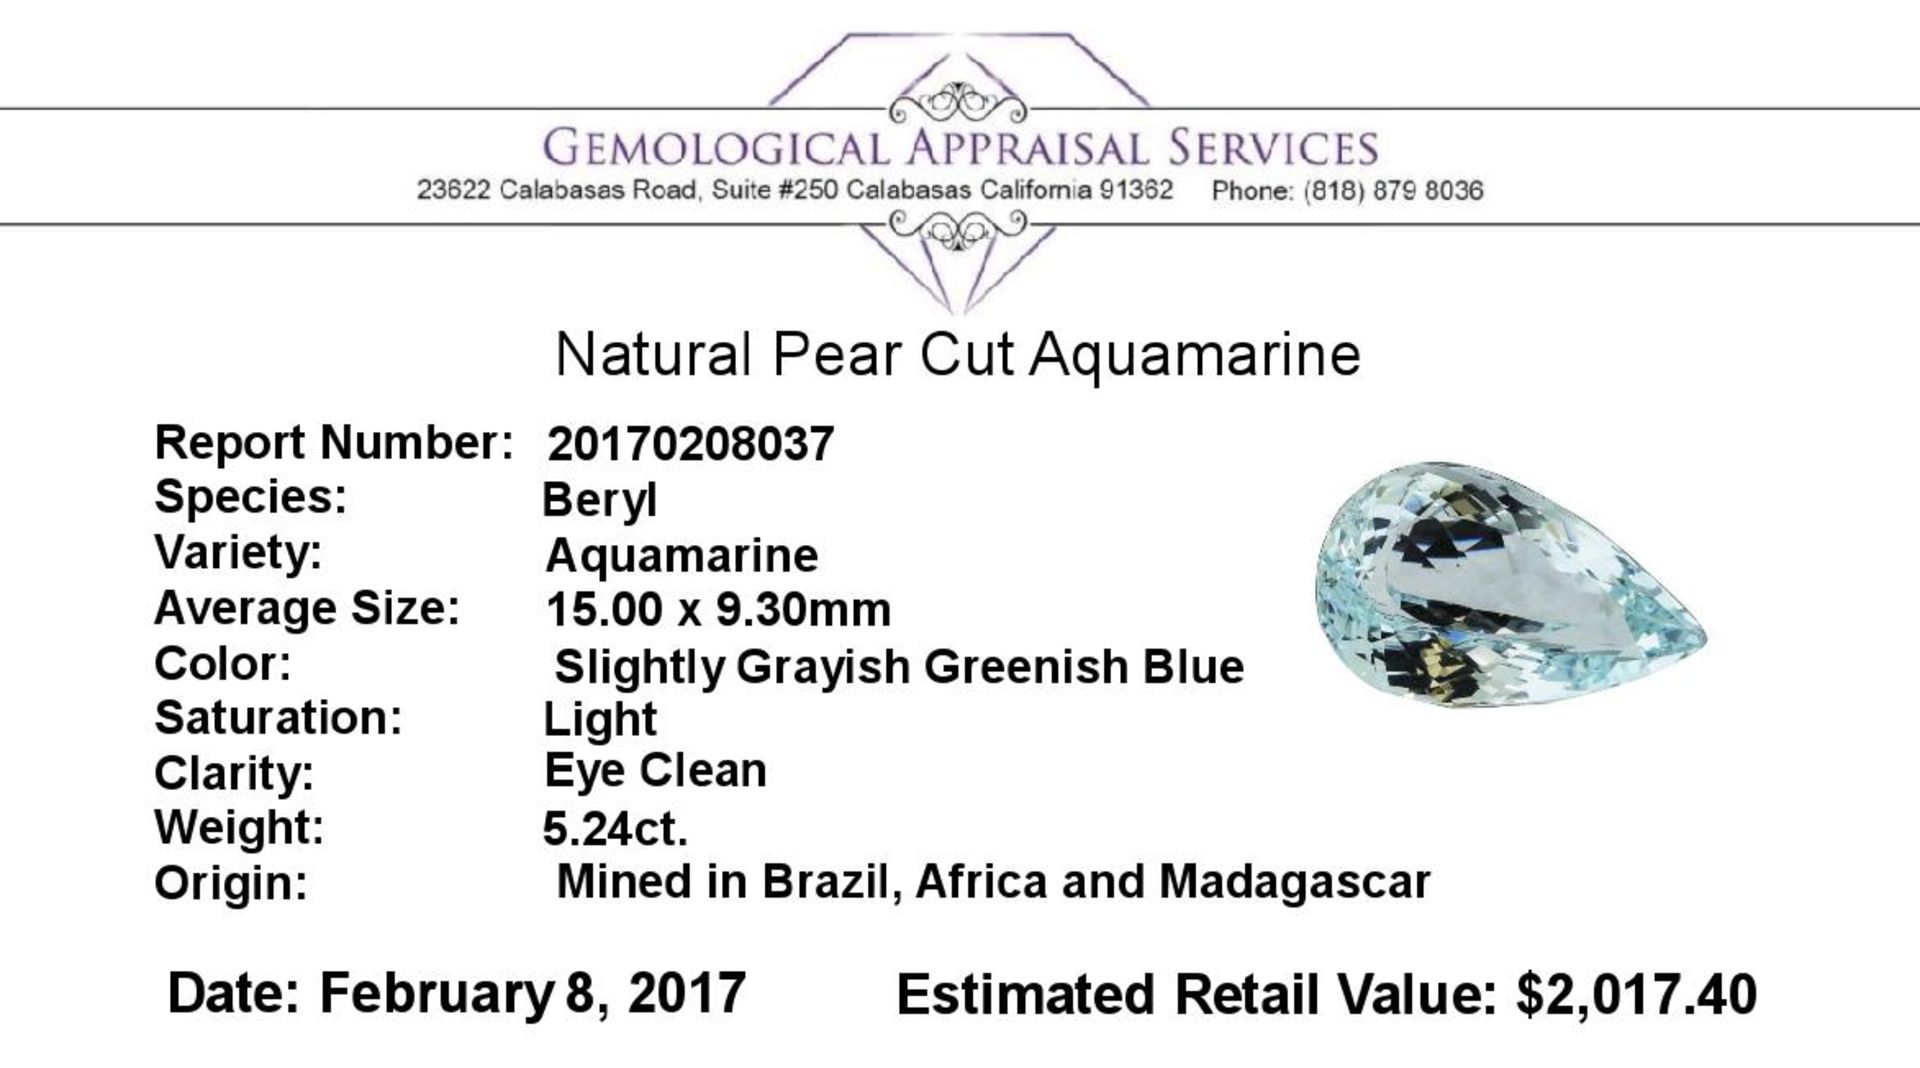 5.24 ct.Natural Pear Cut Aquamarine - Image 2 of 2